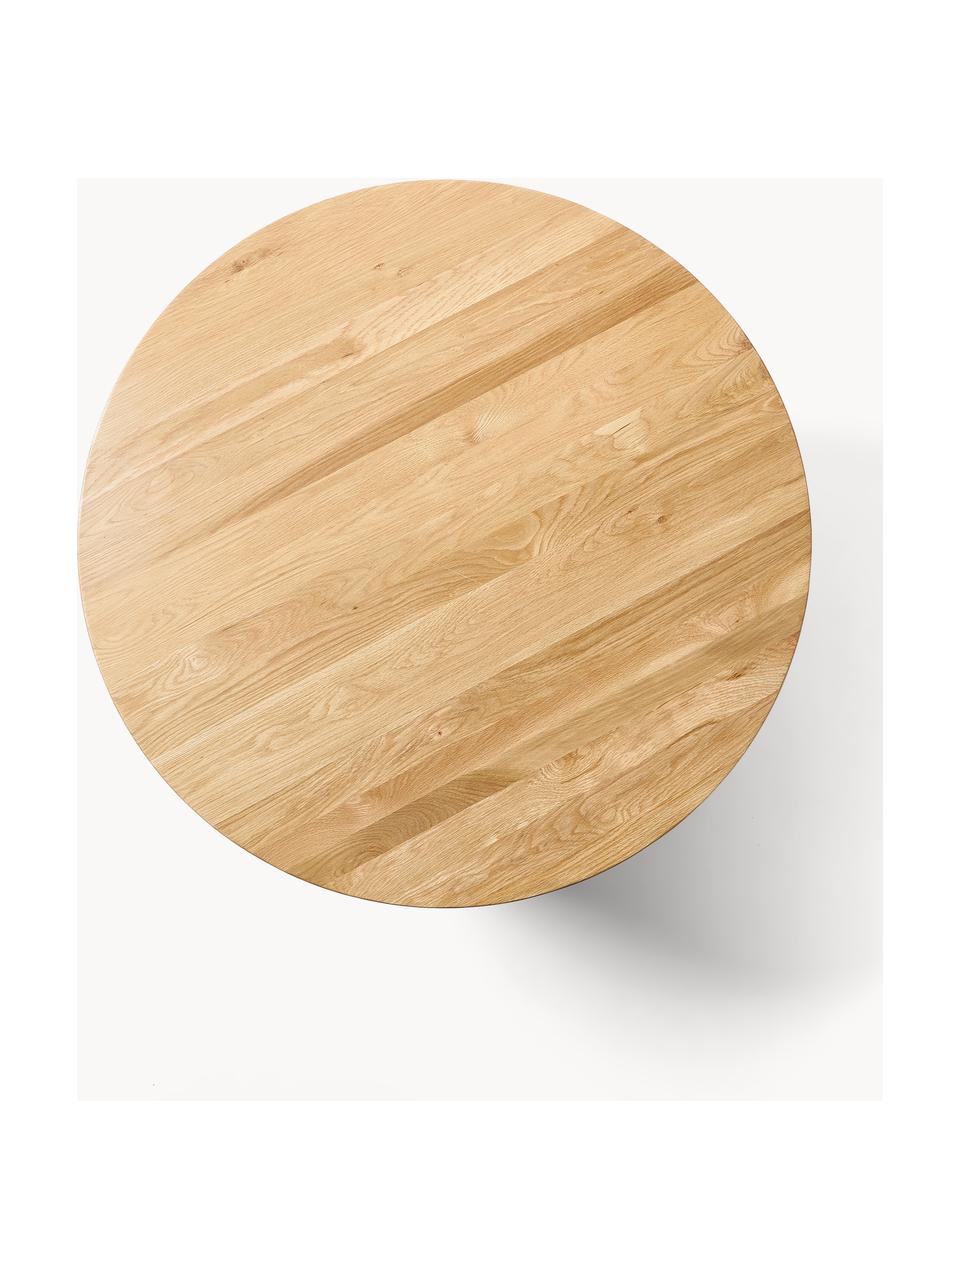 Kulatý jídelní stůl z dubového dřeva Ohana, Ø 120 cm, Masivní dubové dřevo, olejované

Tento produkt je vyroben z udržitelných zdrojů dřeva s certifikací FSC®., Dubové dřevo, světle olejované, Ø 120 cm